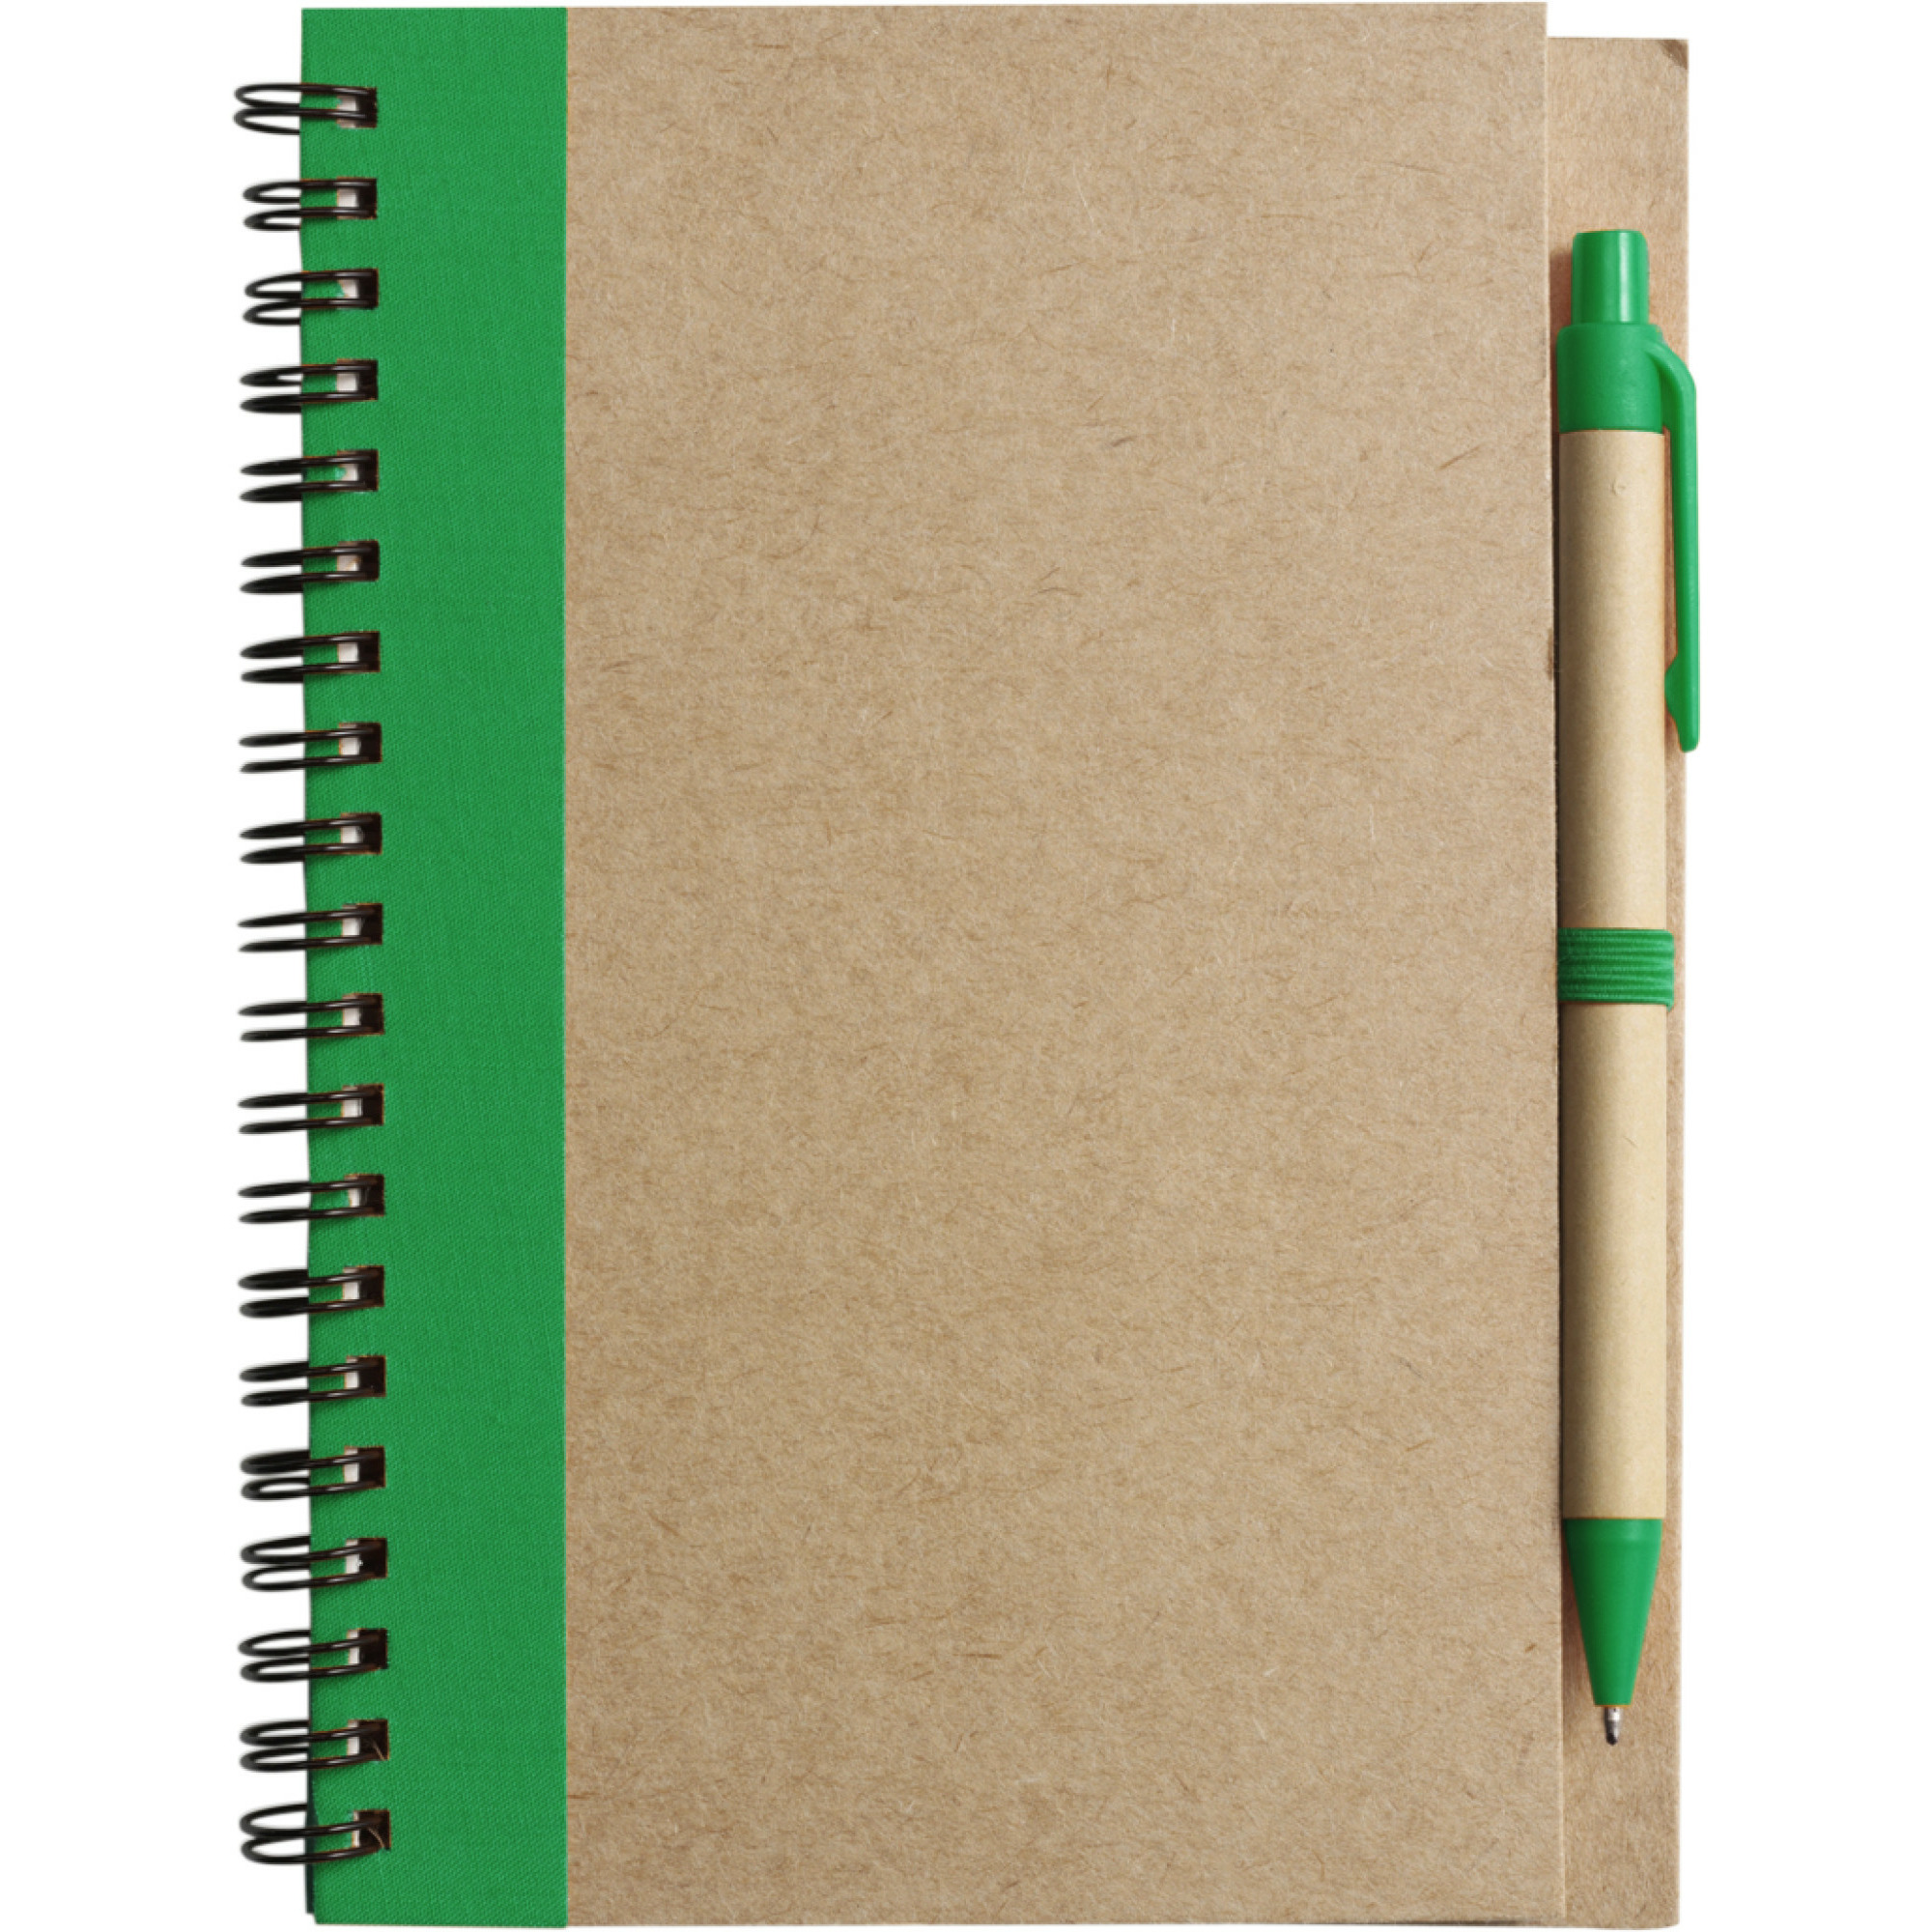 Notitie boekje-blok met balpen harde kaft beige-groen 18 x 13 cm 60 bladzijden gelinieerd